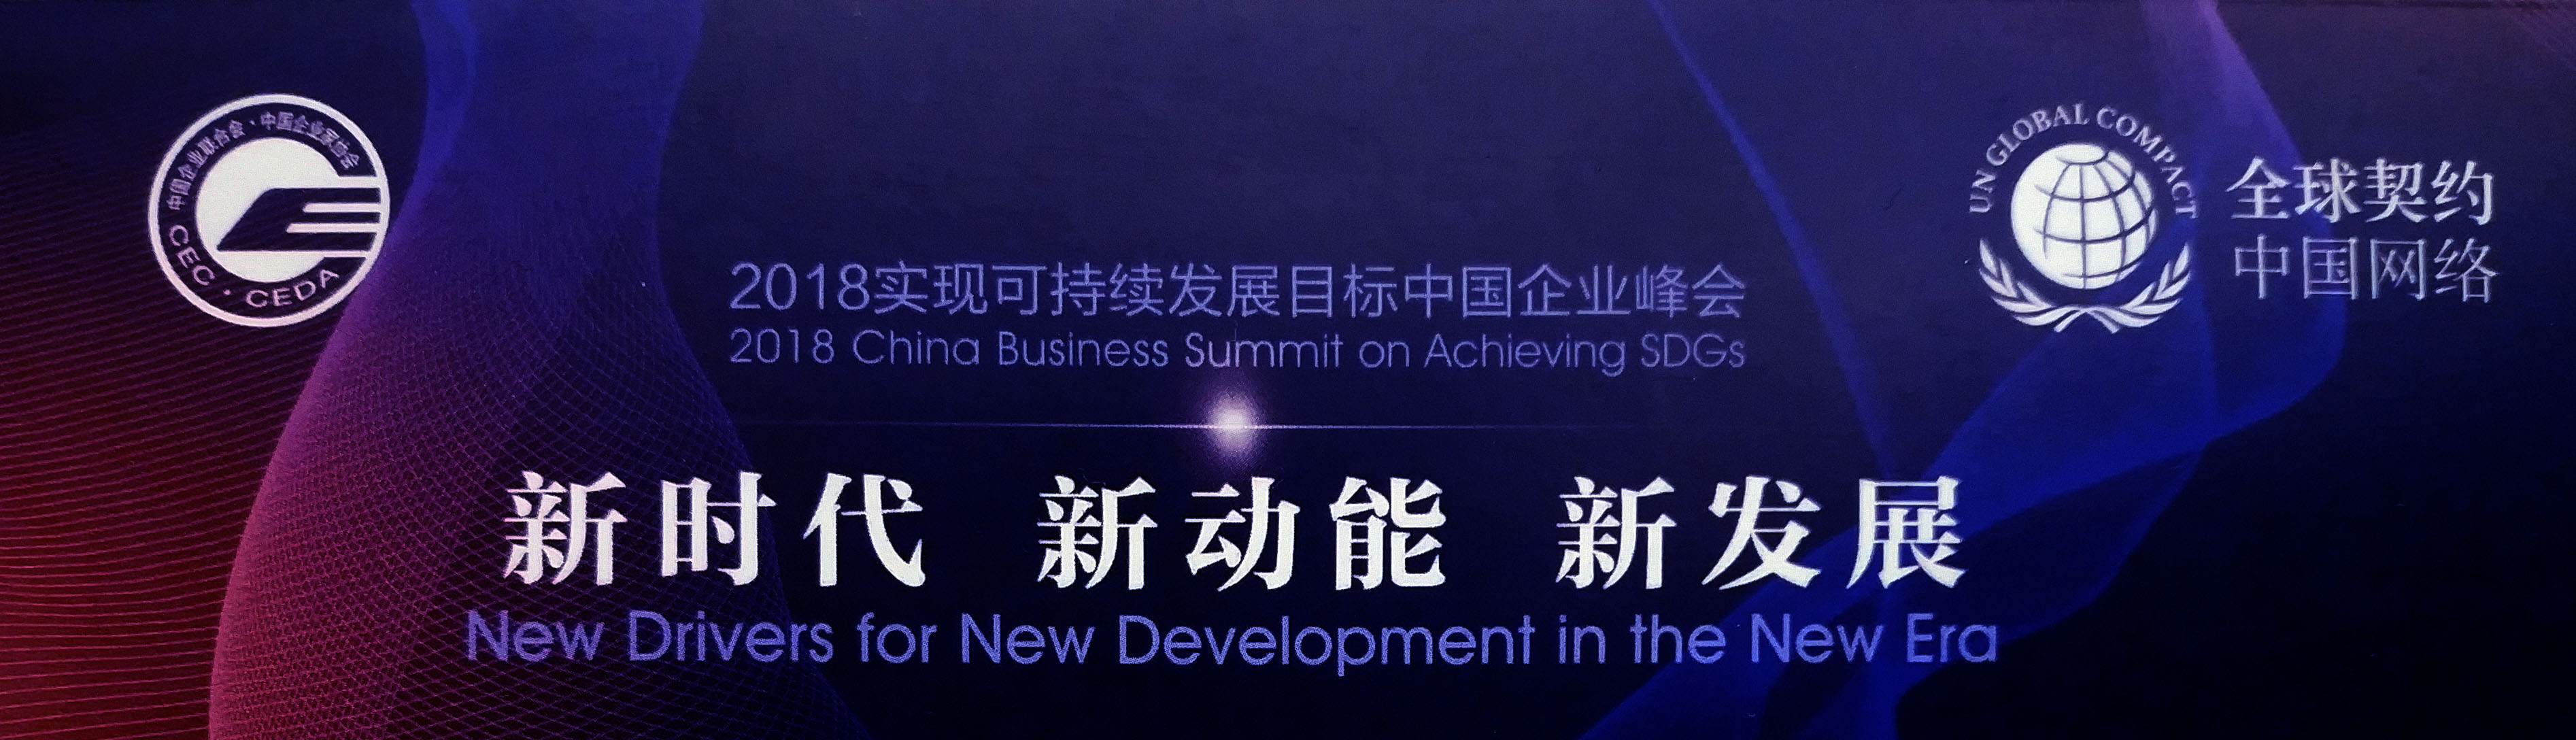 皆亨咨询受邀出席“2018实现可持续发展目标中国企业峰会”并在平行论坛发表主题分享